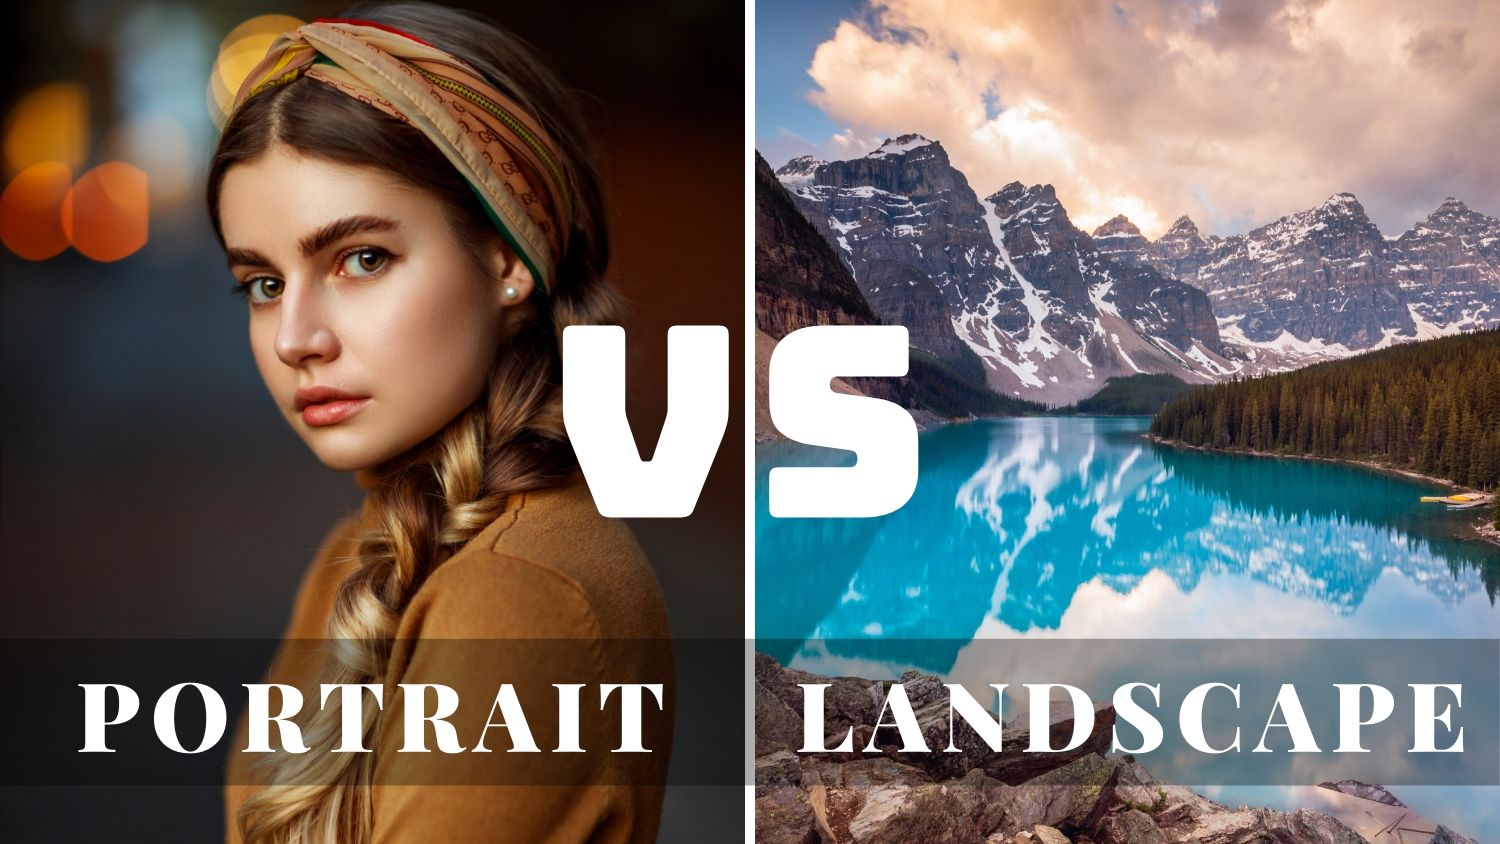 portrait vs landscape on iphone